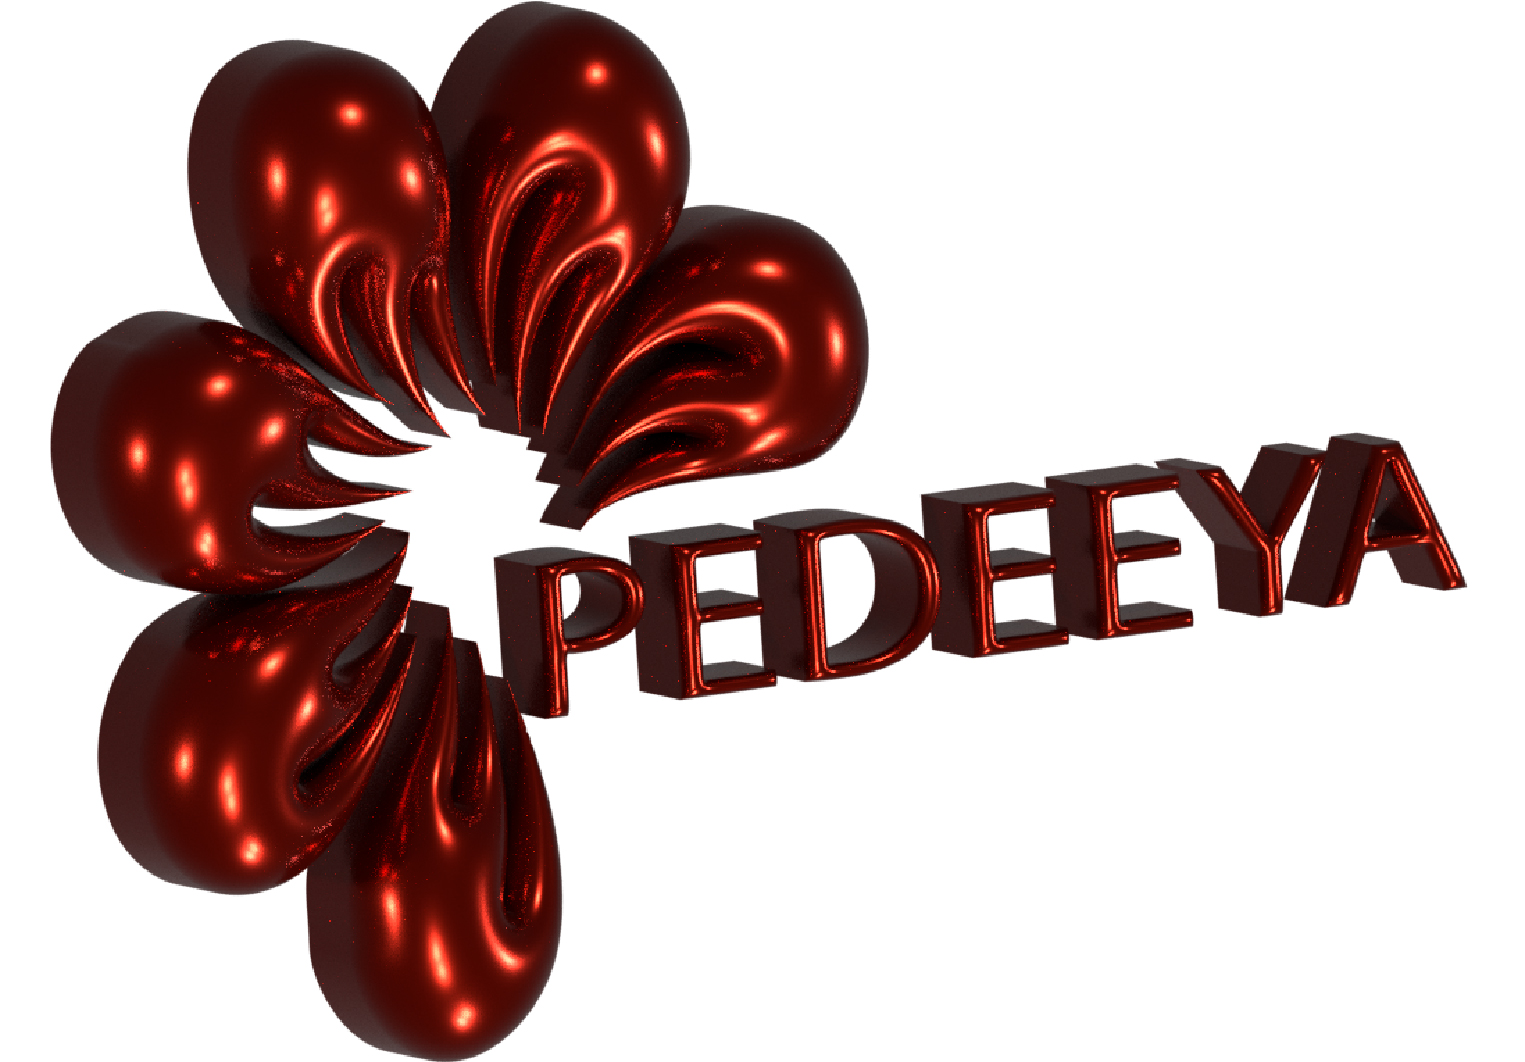 Pedeeya